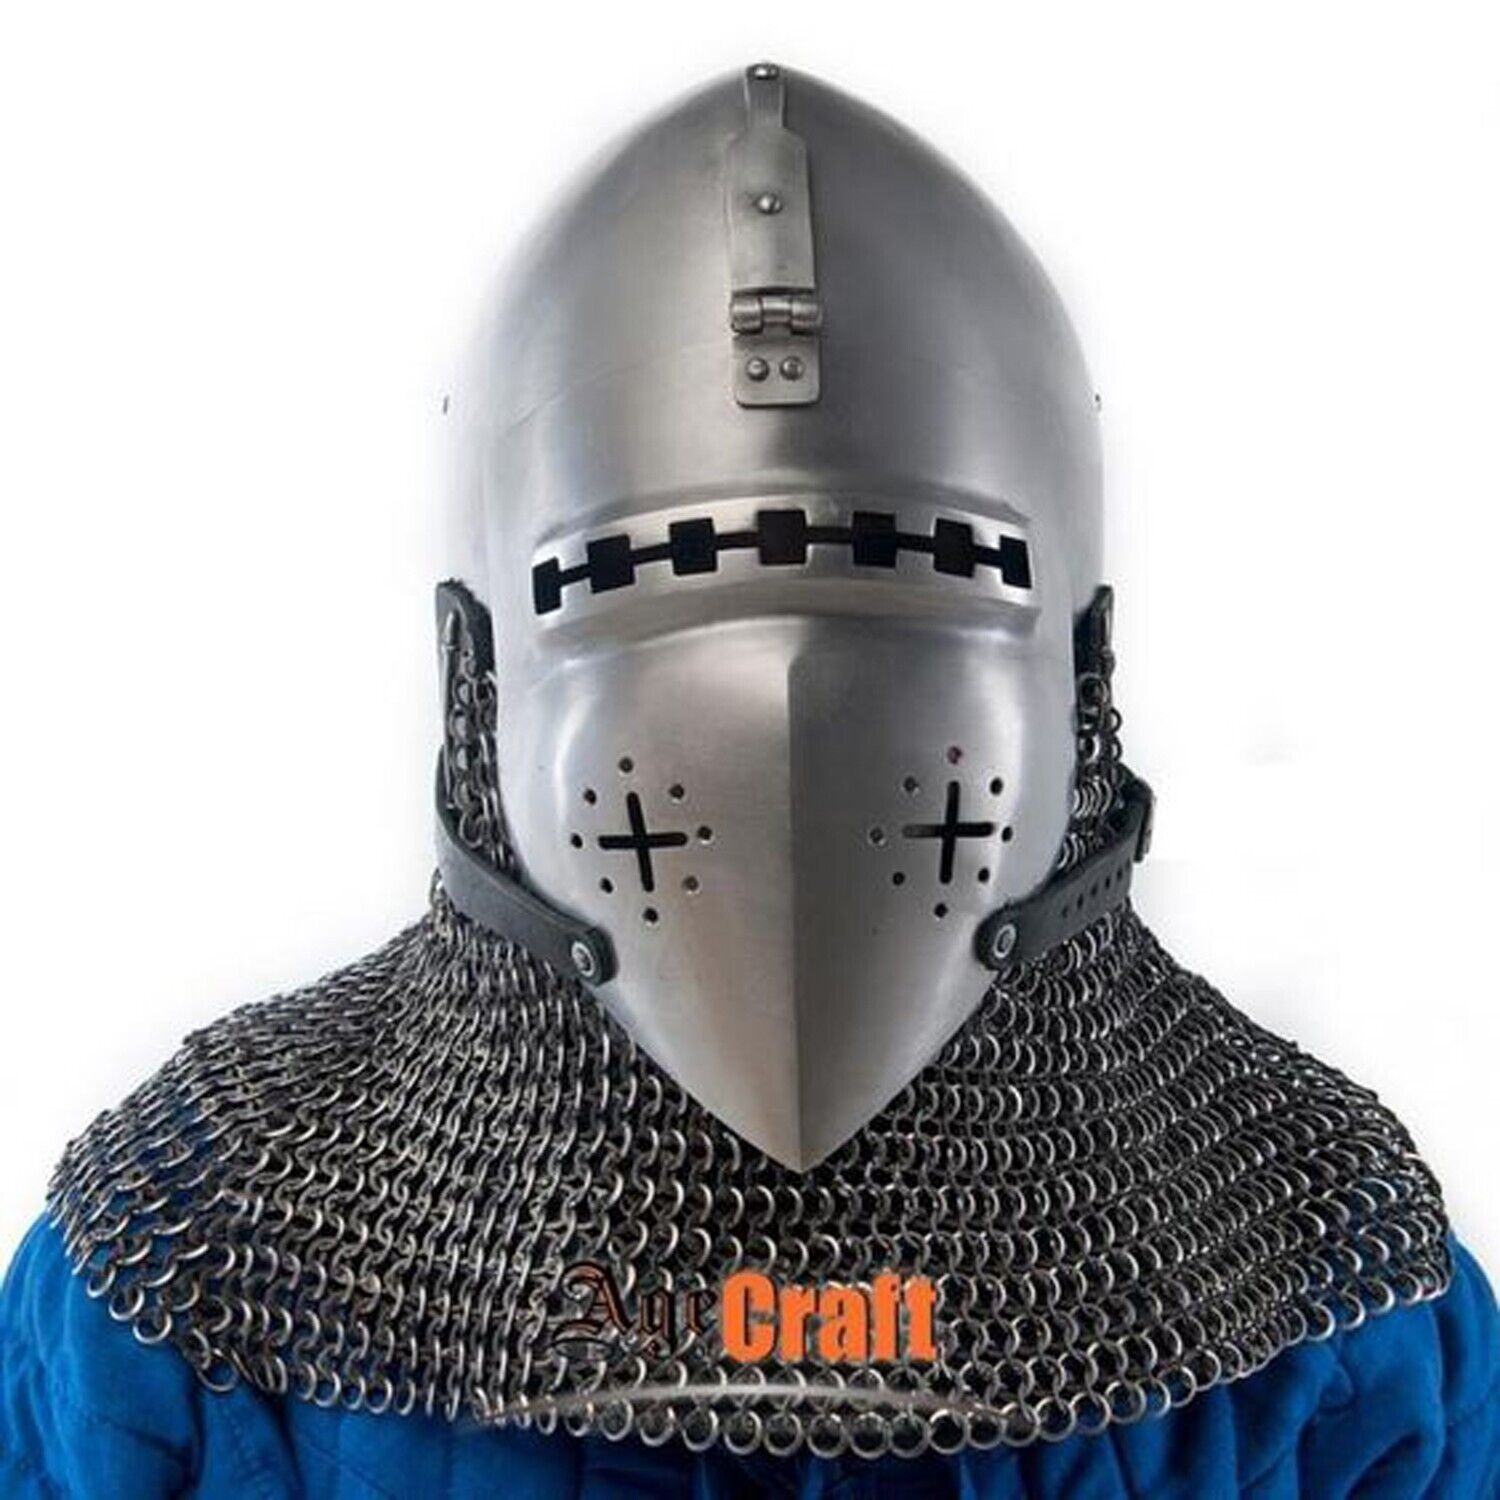 Medieval Nurnberg Bascinet Helmet 16 Guage Steel with Chainmail LARP helmet Cost